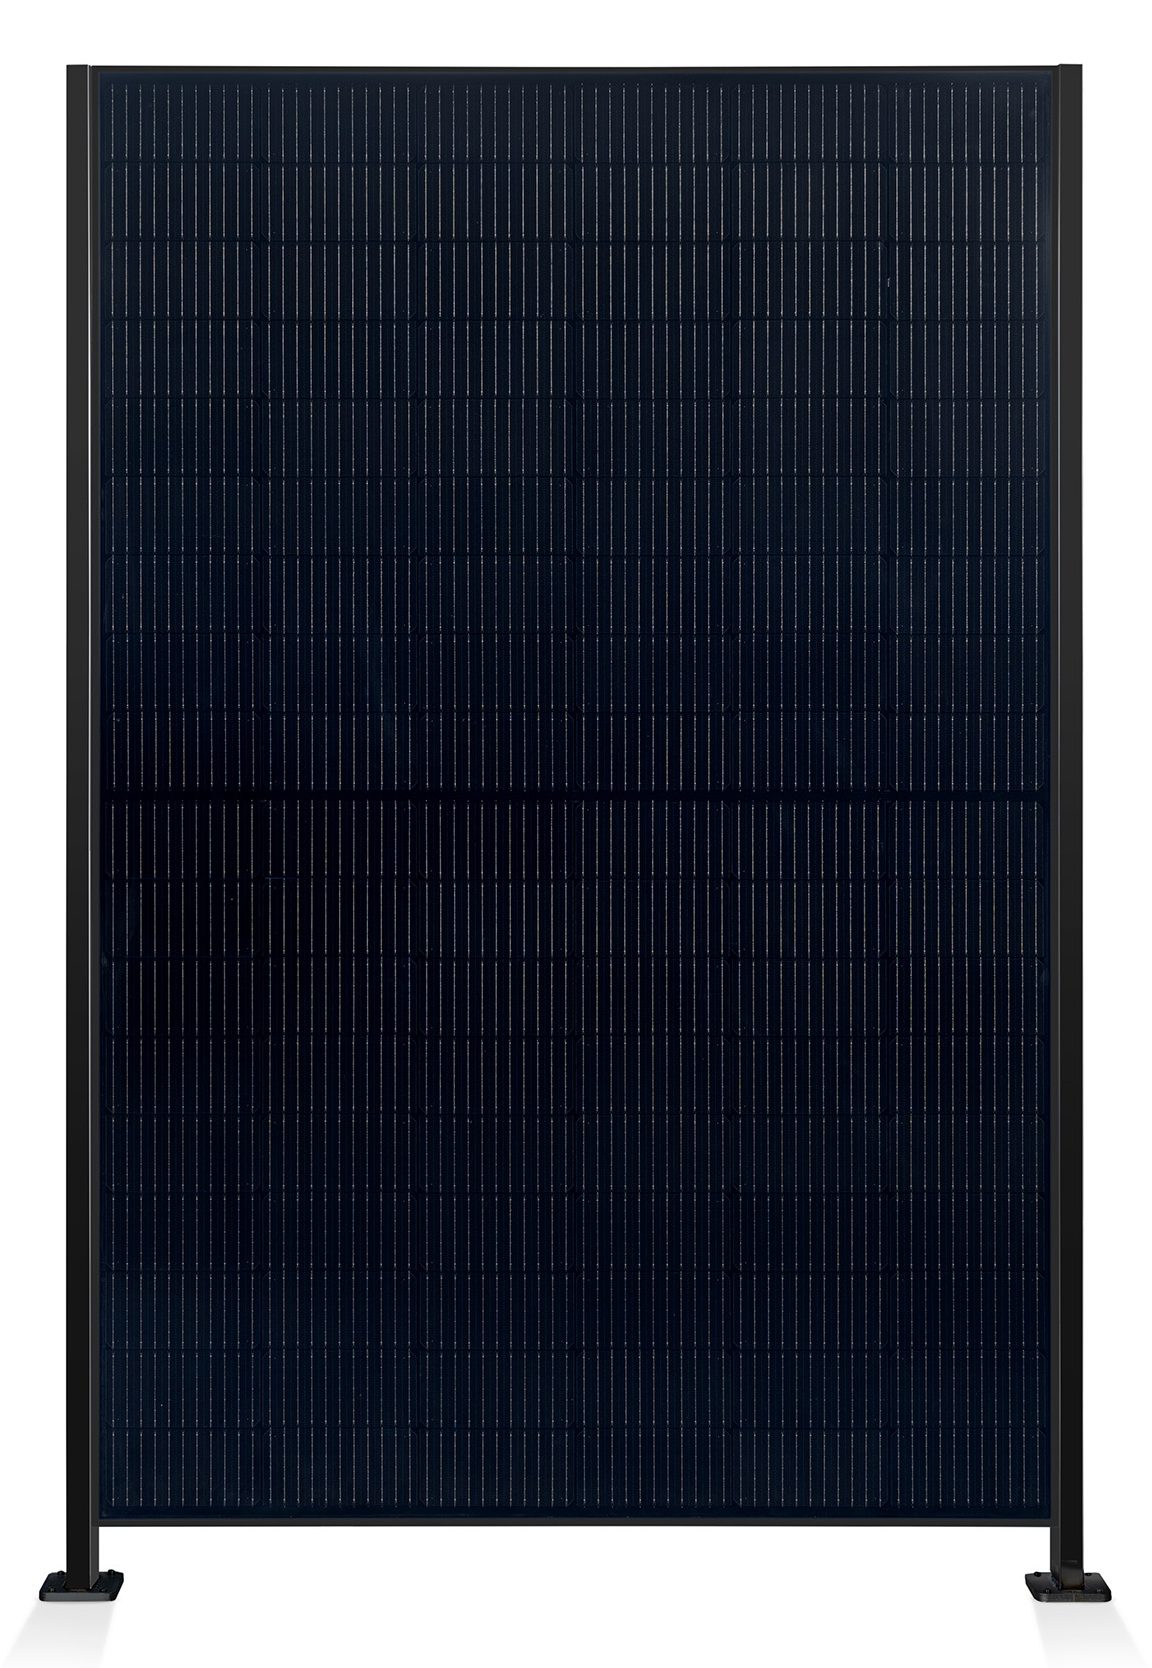 ausschnitt_0003_element-solar-sichtschutz-pv-photovoltaik-zaun-collection-hutter-panel-schwarz-pfosten-schwarz-front.jpg